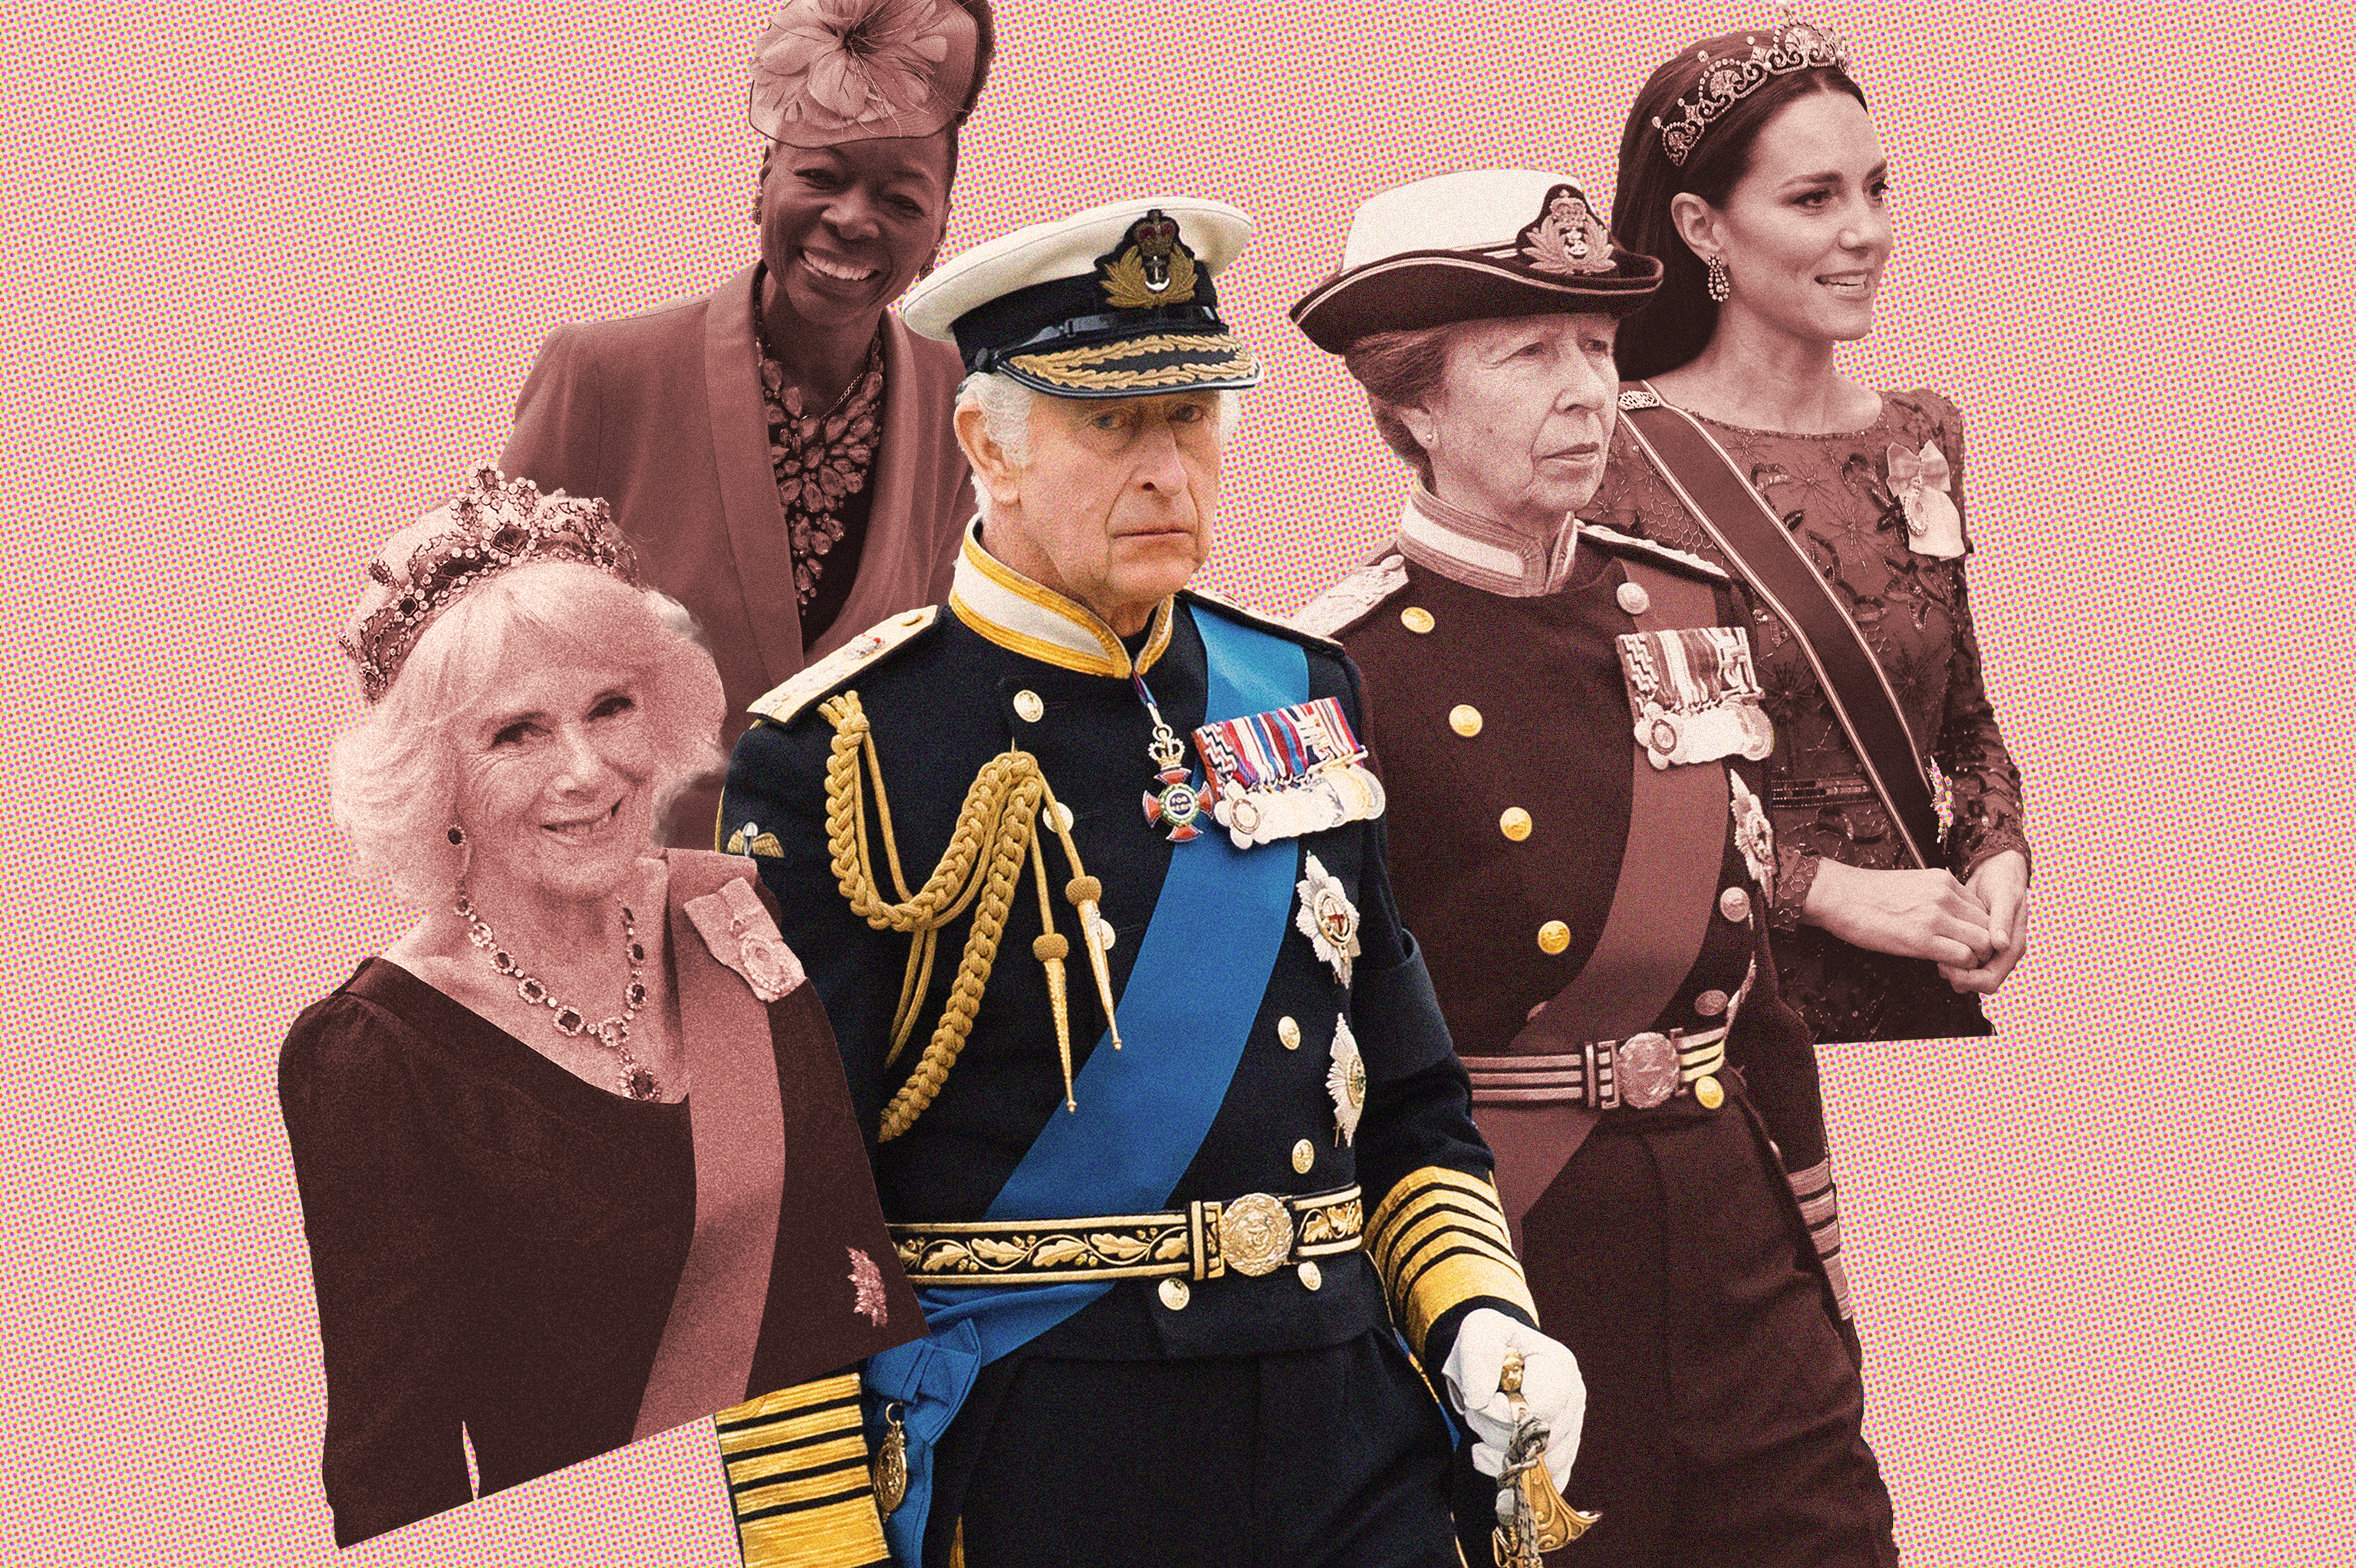 Claves de la coronacin de Carlos III: la princesa Ana, su papel crucial vestida con uniforme militar y a caballo y otros detalles de etiqueta